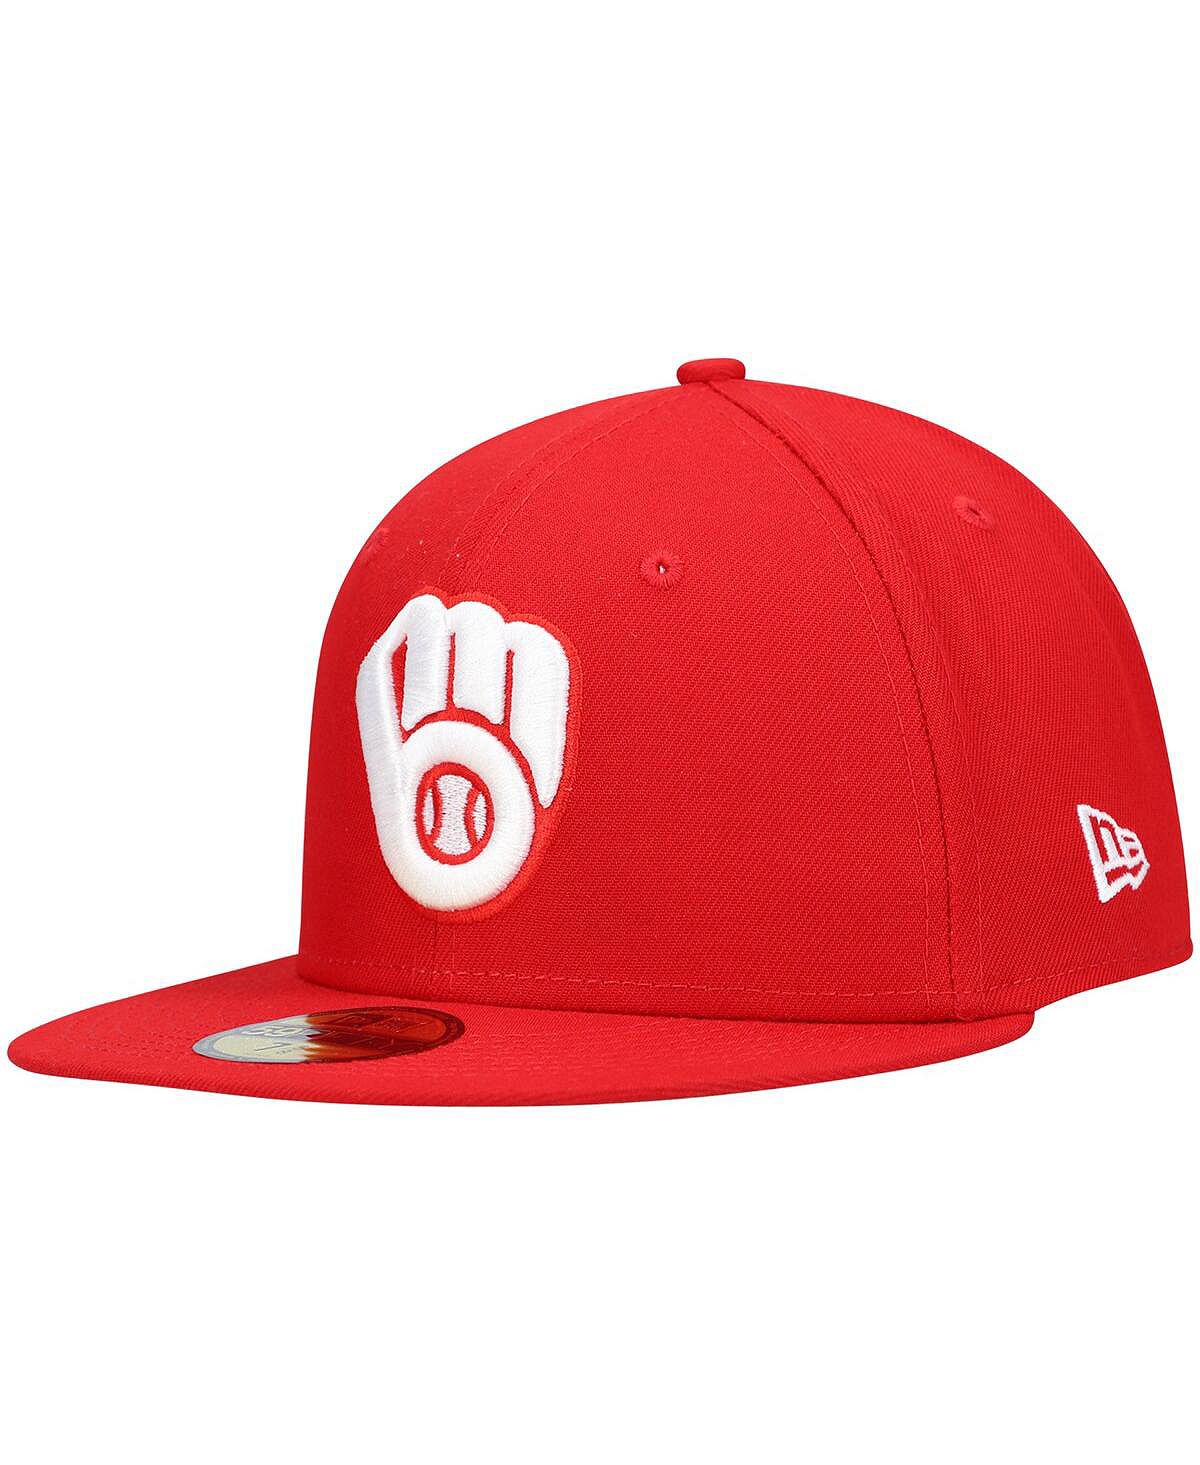 Мужская красная шляпа с логотипом Milwaukee Brewers, белая 59FIFTY, приталенная шляпа New Era